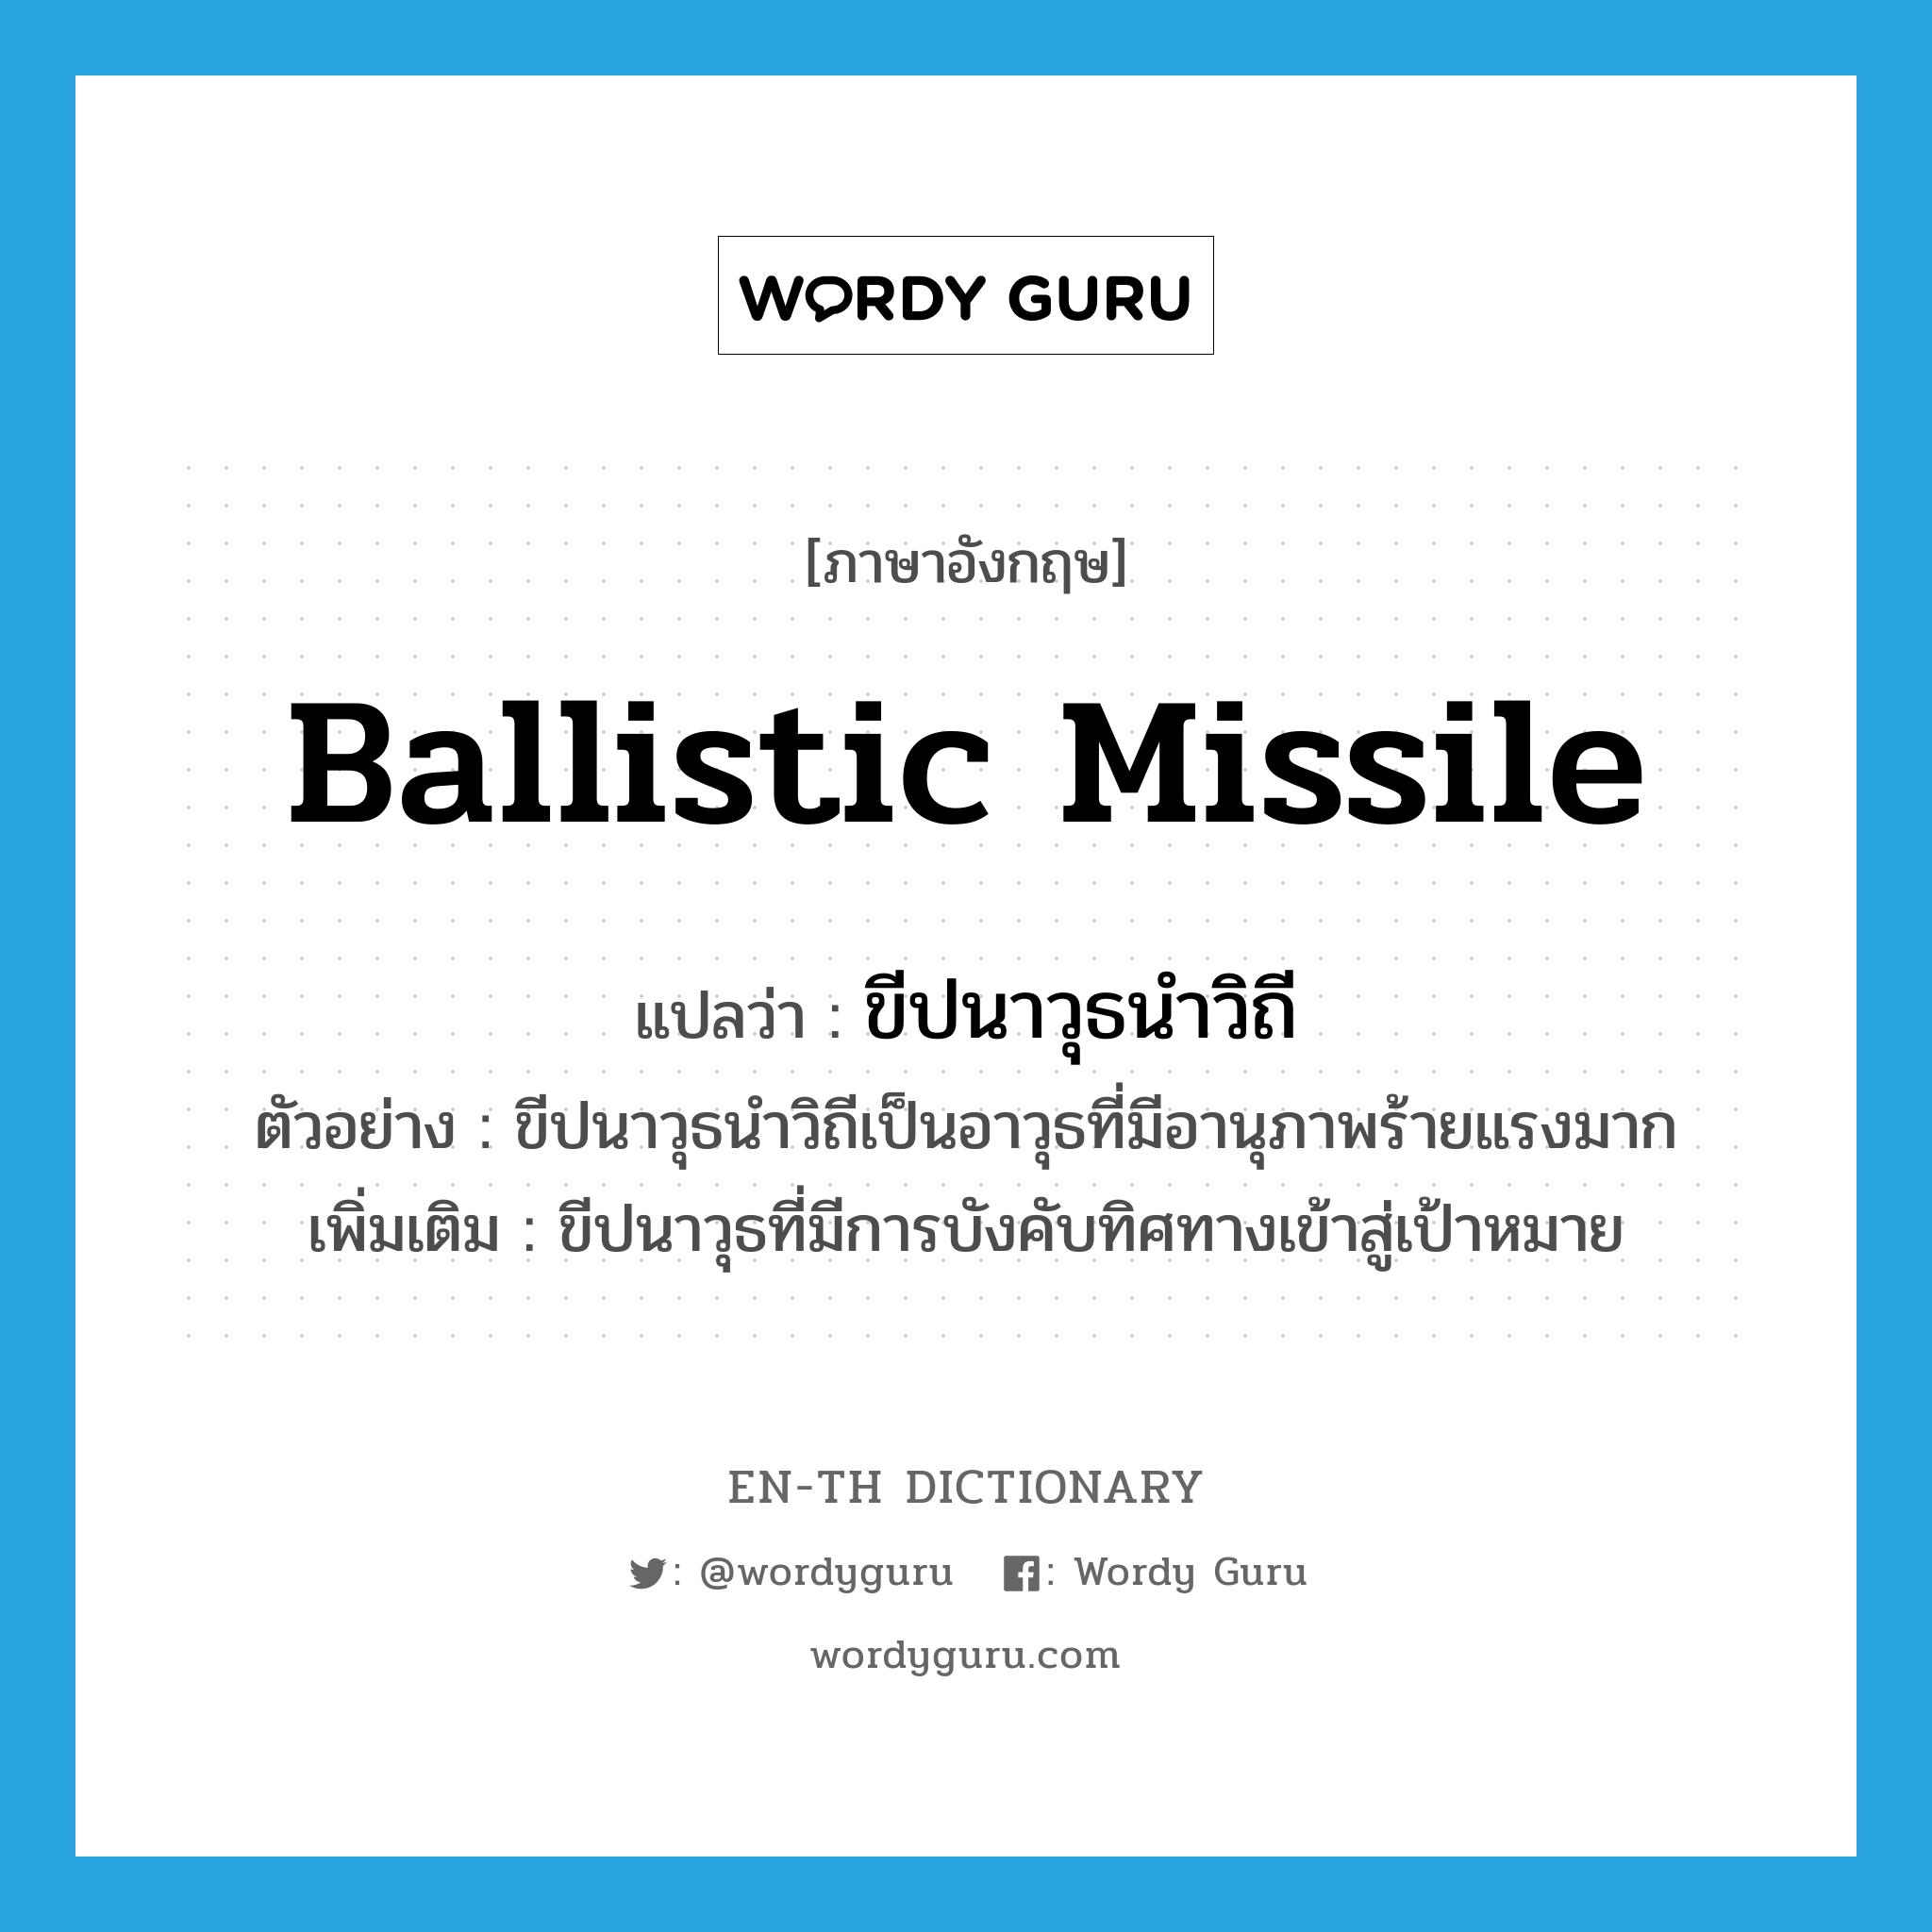 ballistic missile แปลว่า?, คำศัพท์ภาษาอังกฤษ ballistic missile แปลว่า ขีปนาวุธนำวิถี ประเภท N ตัวอย่าง ขีปนาวุธนำวิถีเป็นอาวุธที่มีอานุภาพร้ายแรงมาก เพิ่มเติม ขีปนาวุธที่มีการบังคับทิศทางเข้าสู่เป้าหมาย หมวด N